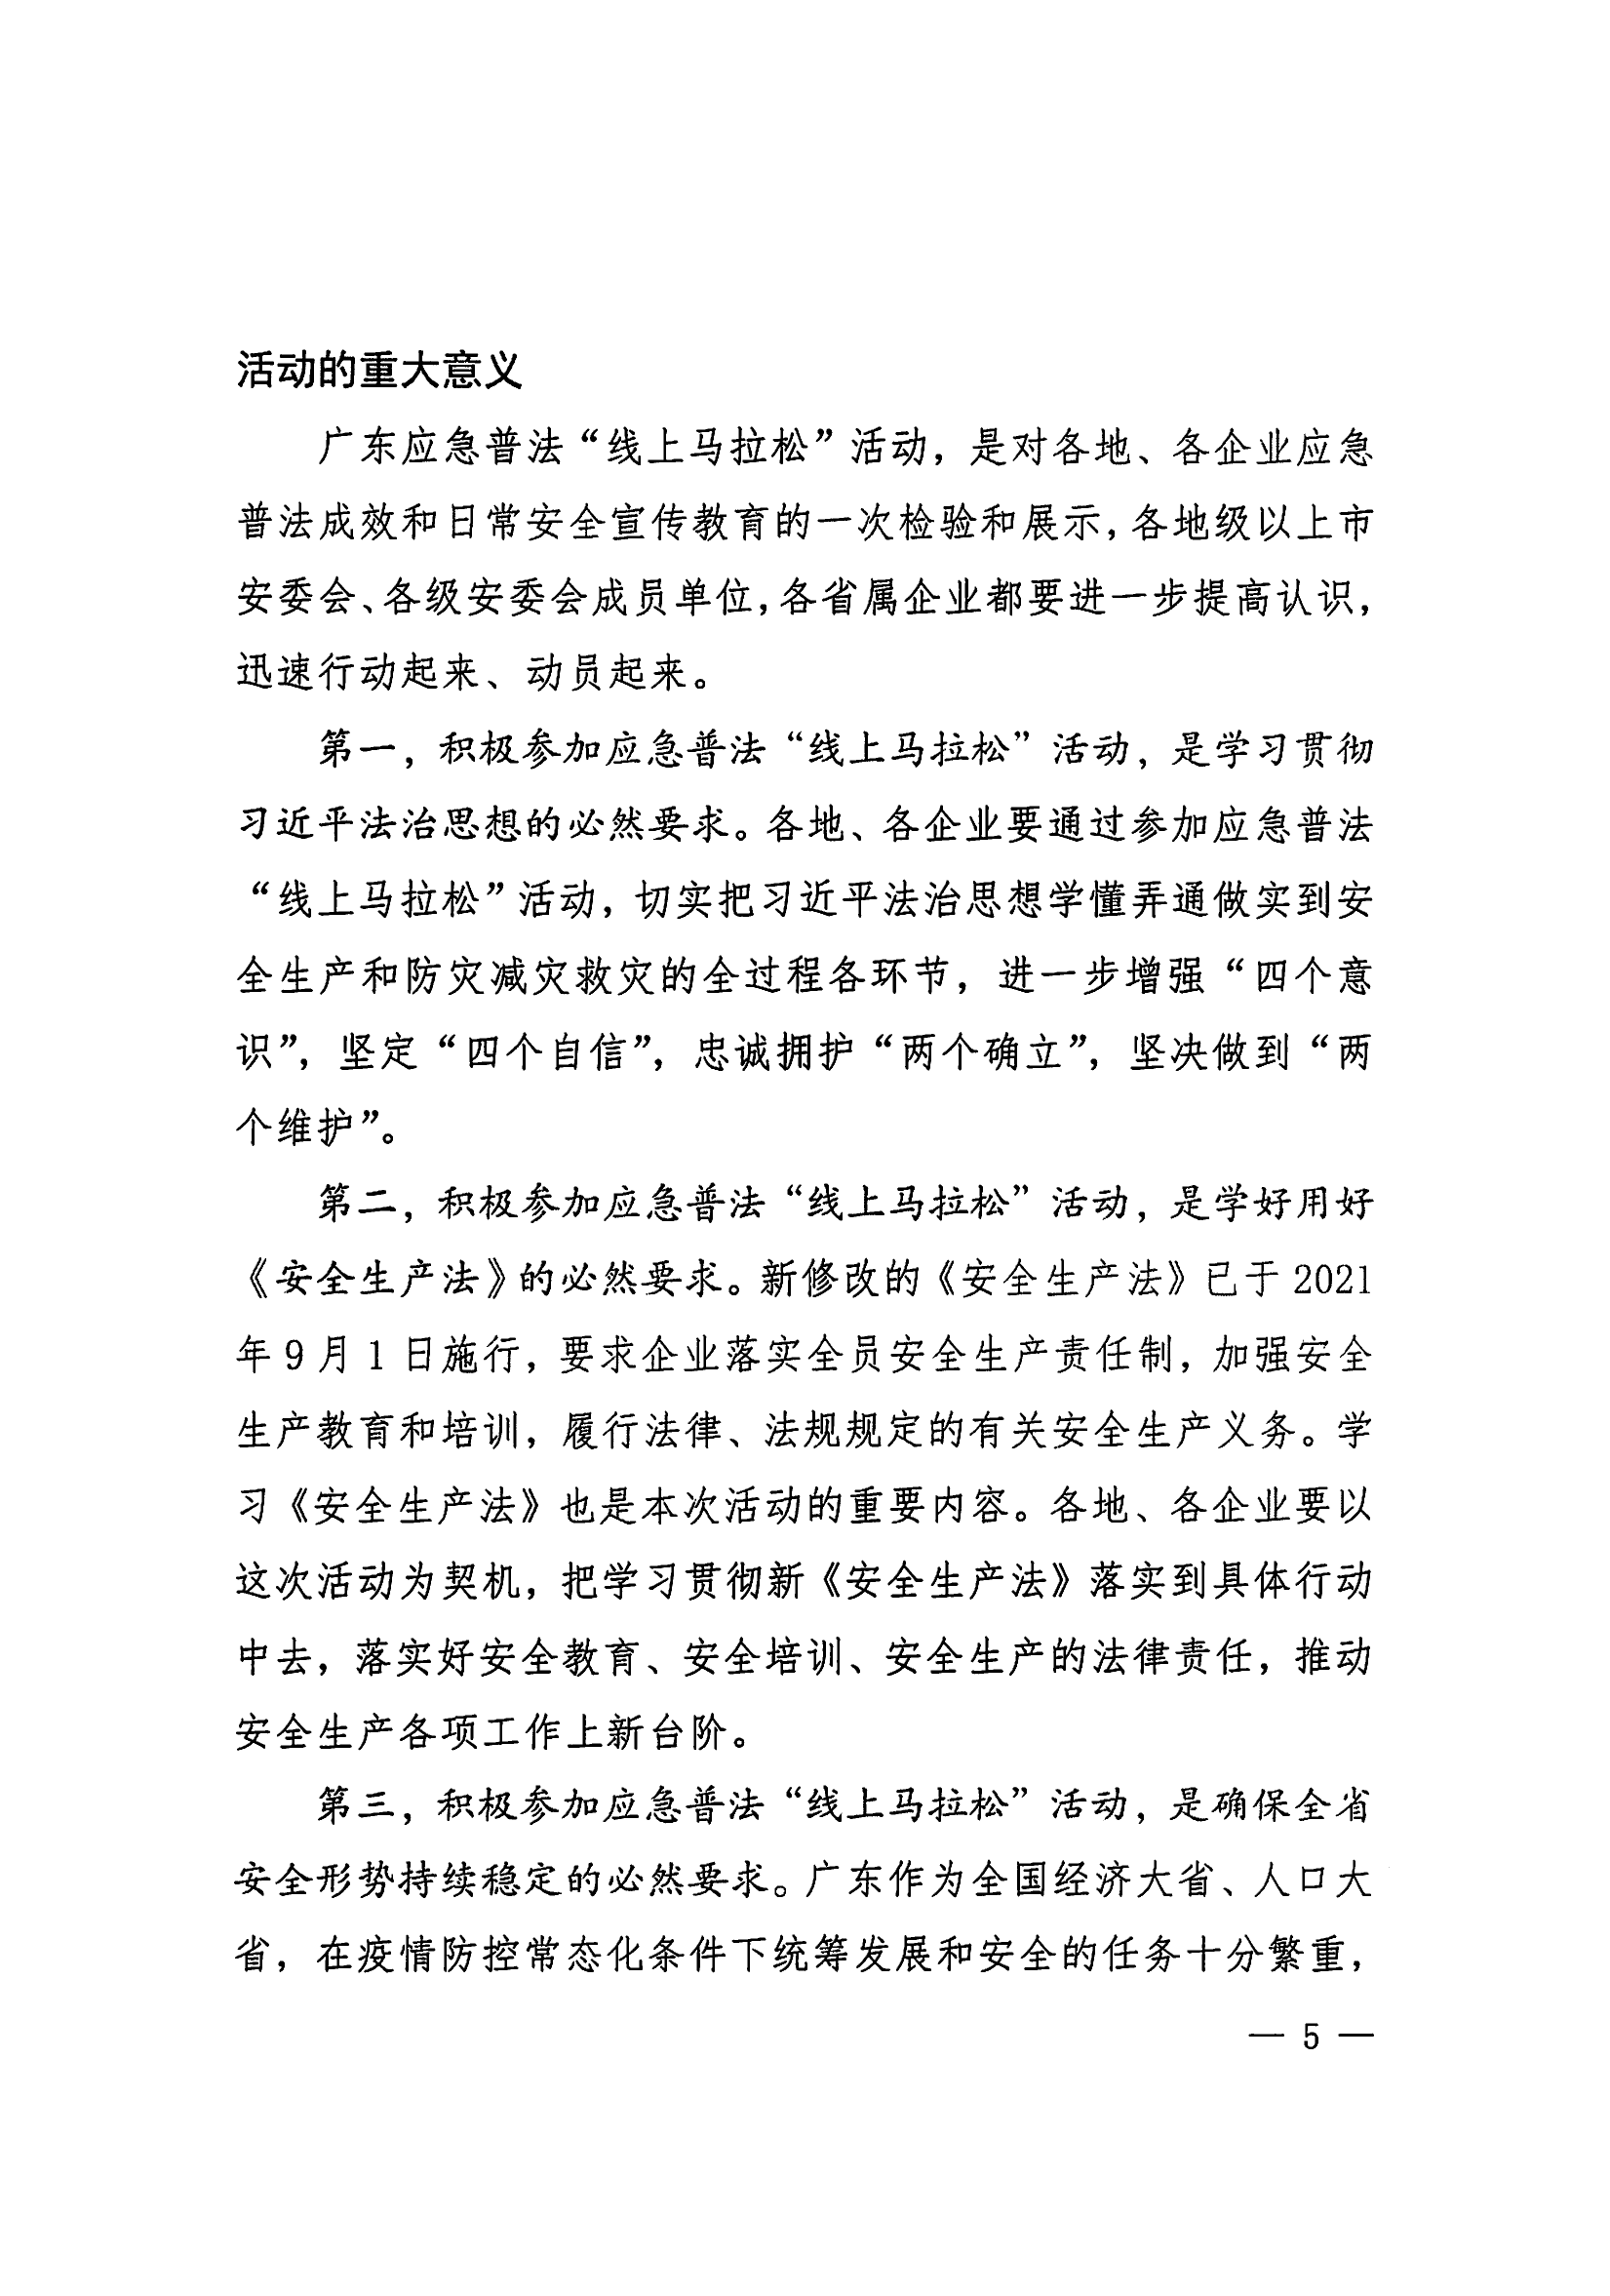 惠州市安全生产委员会办公室转发关于进一步组织开展好广东应急普法“线上马拉松”活动的通知_06.png